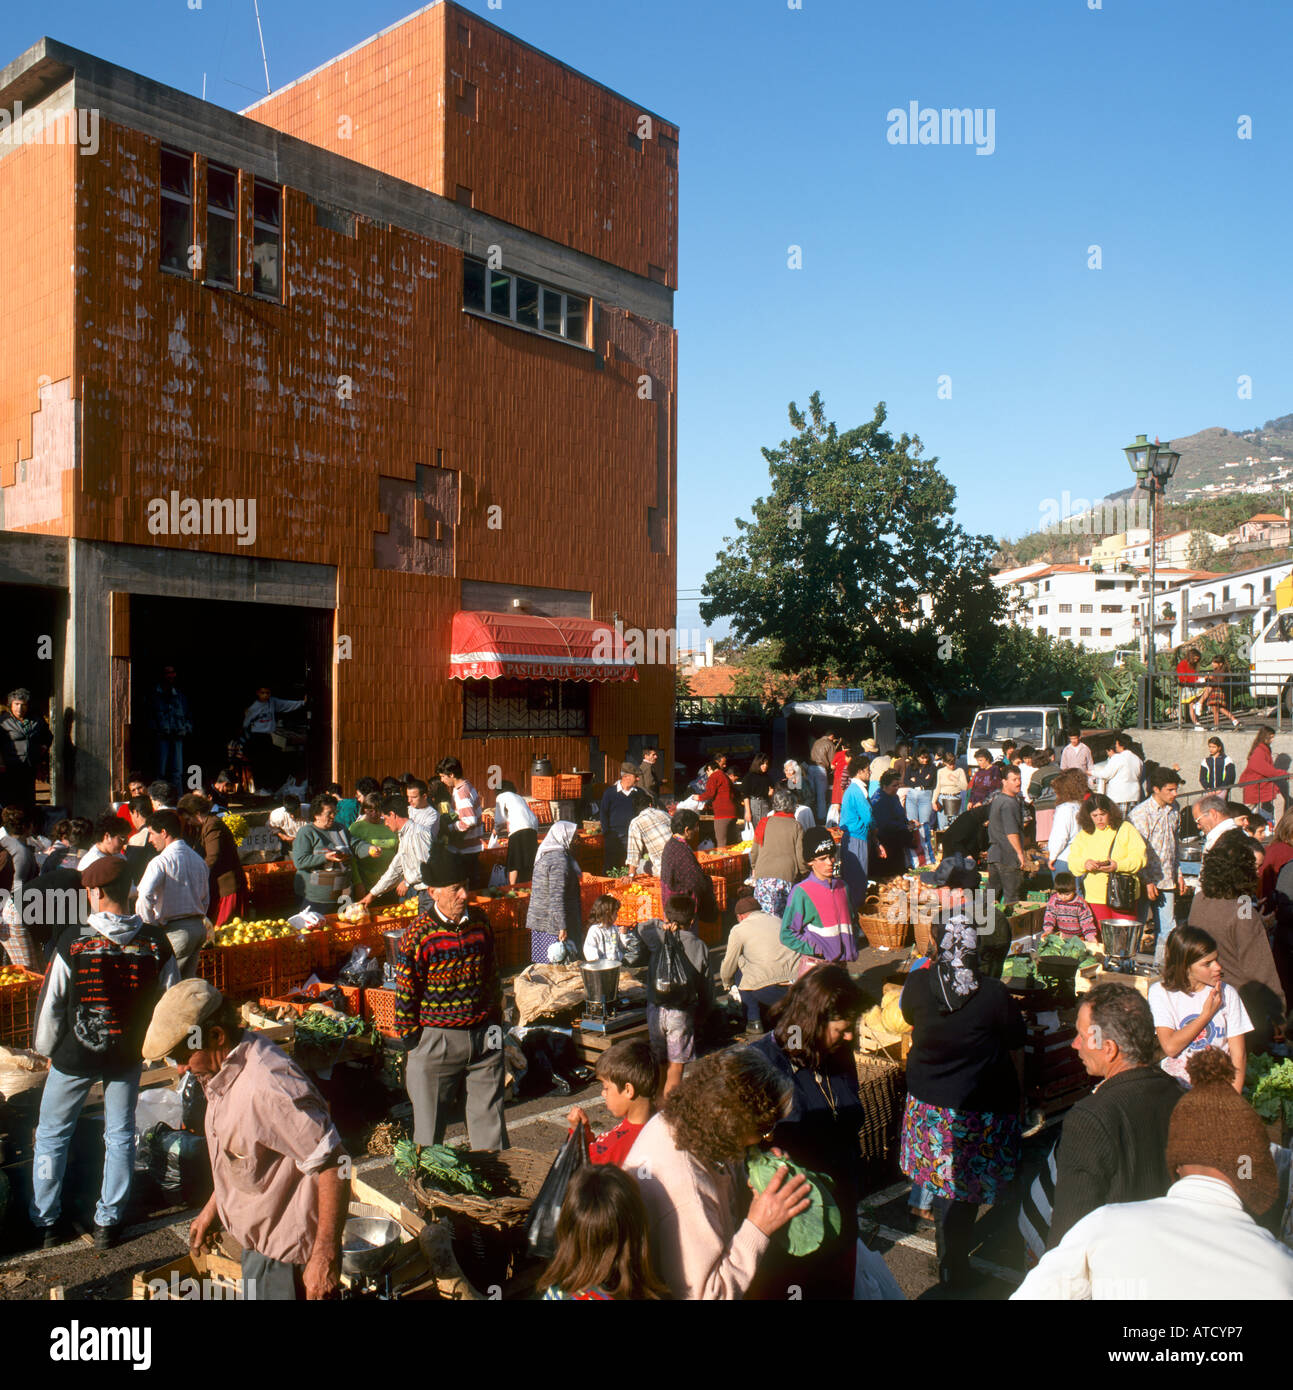 Local market in the town of Camara de Lobos, Madeira Portugal Stock Photo